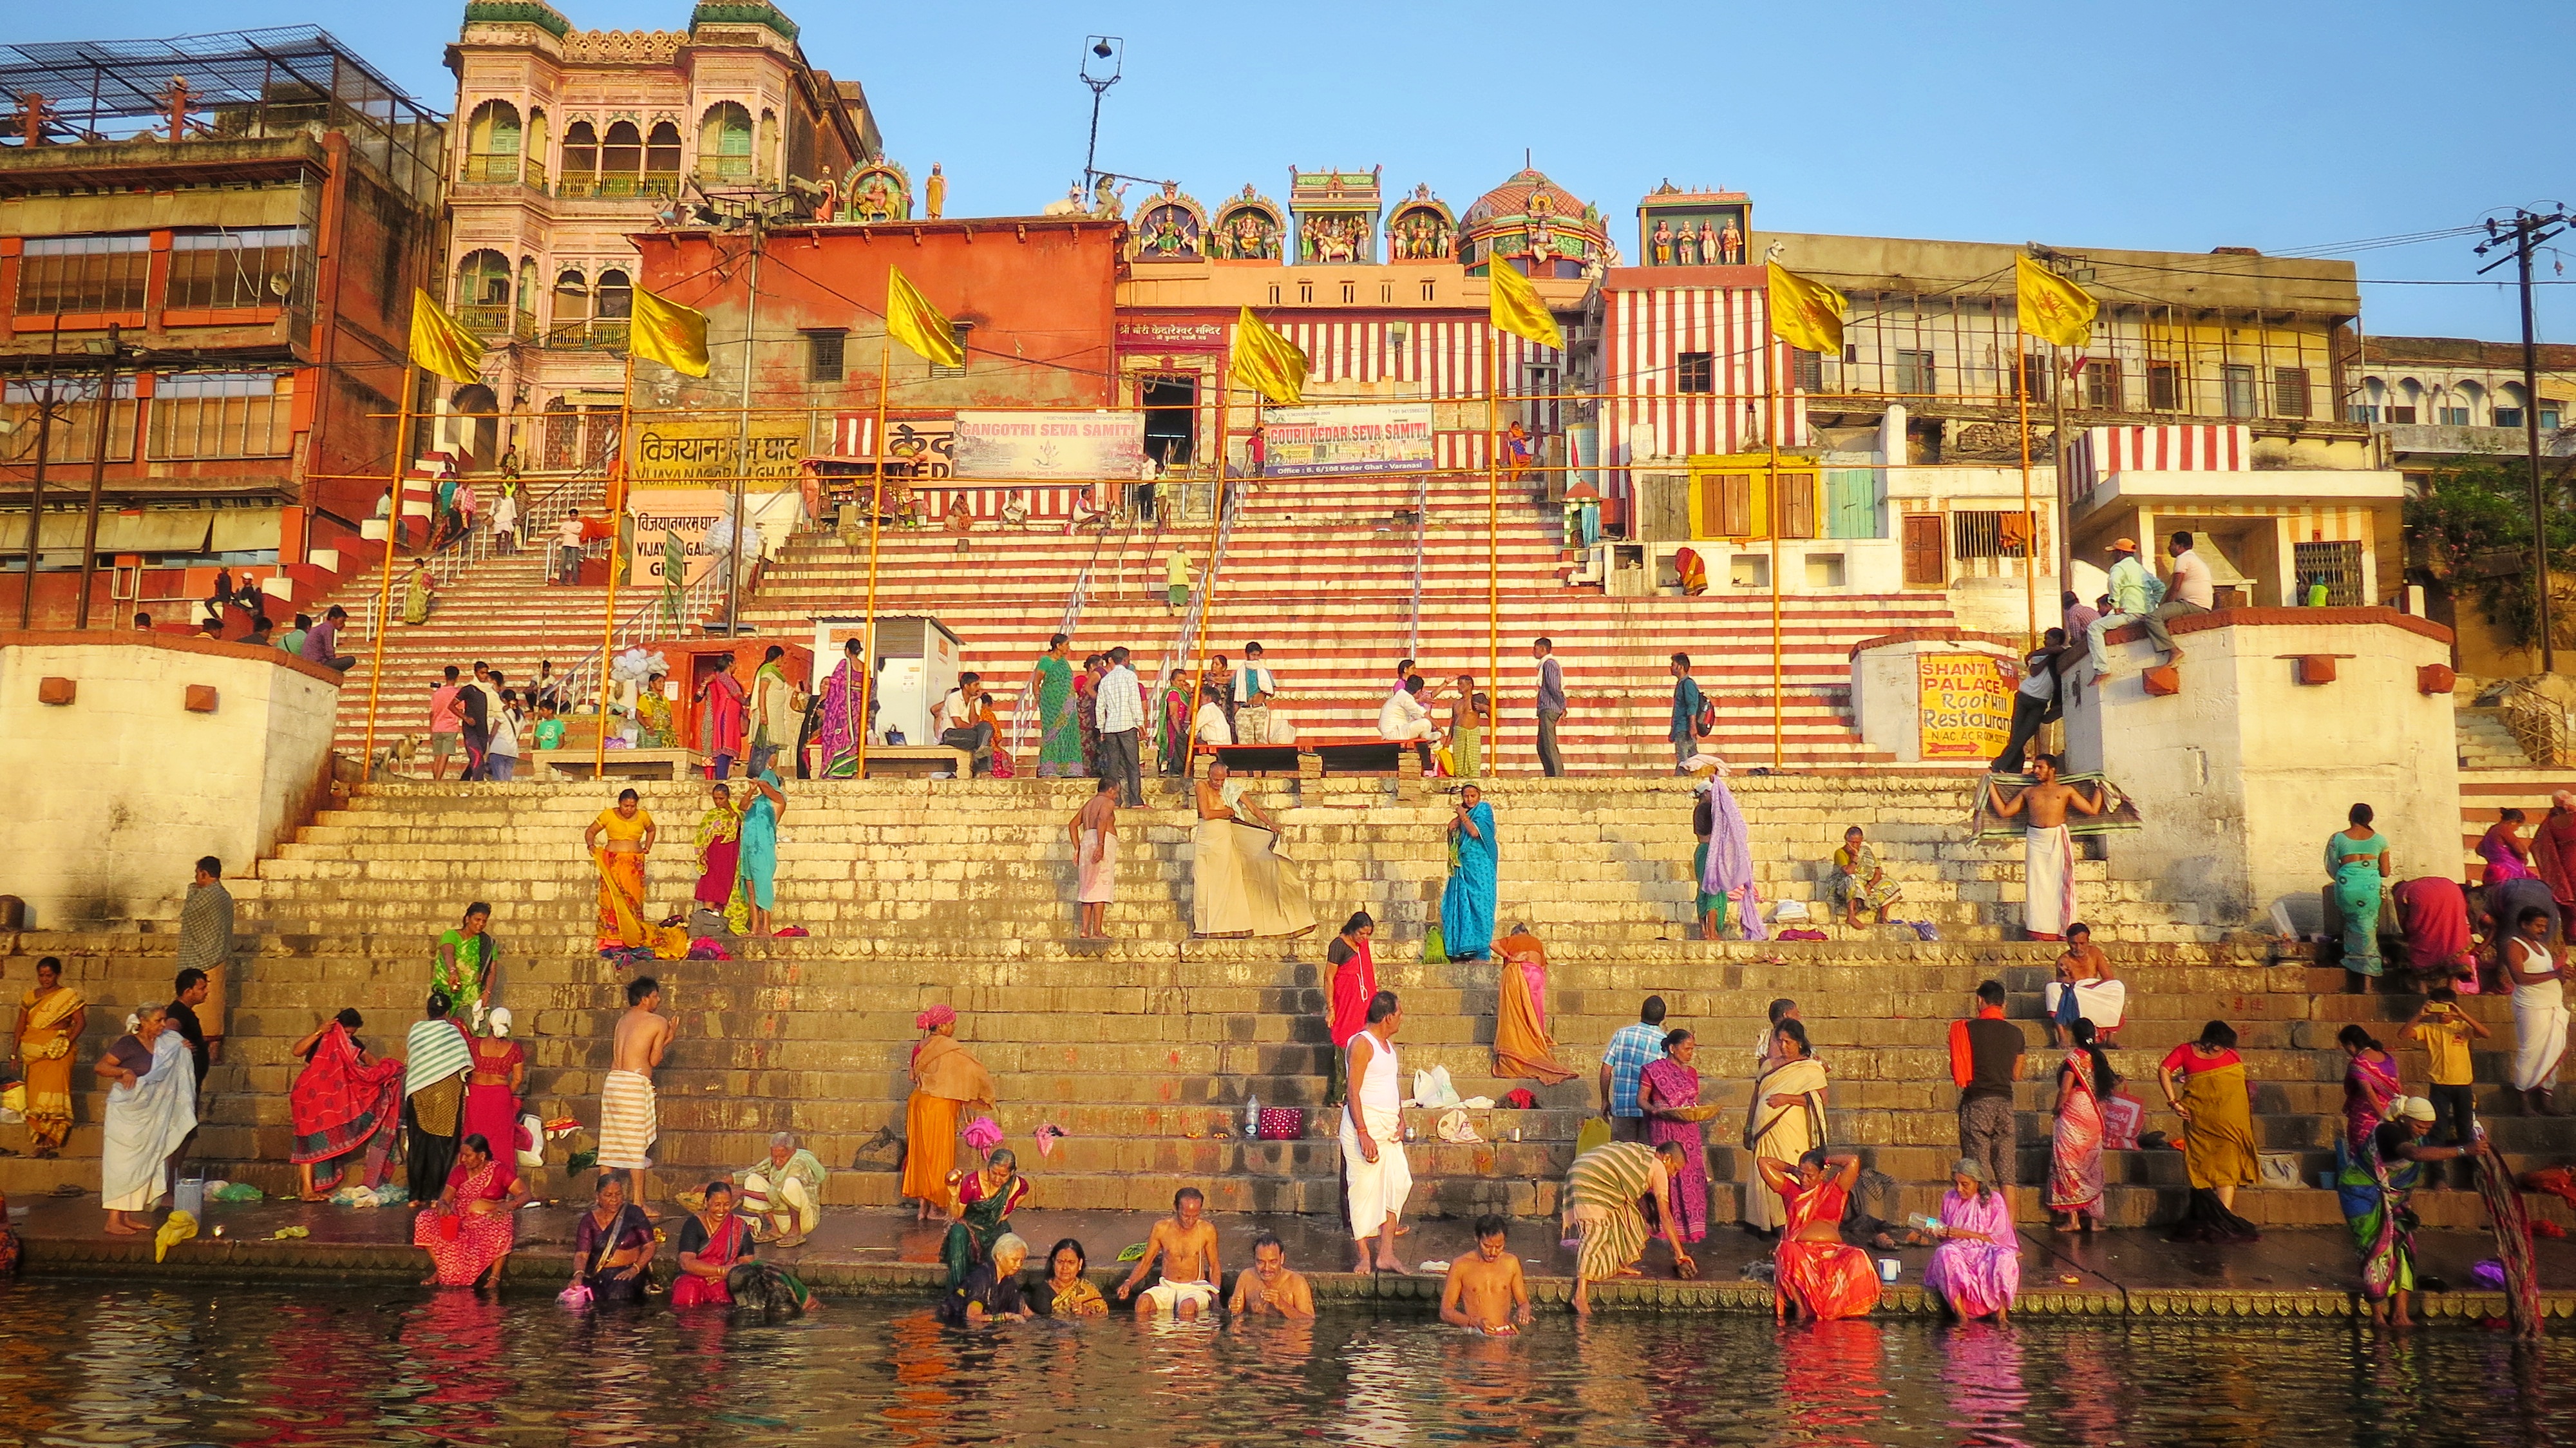 Ταξίδι. Ινδία. Βαρανάσι. Η θεά Ganga και η ατελείωτη θάλασσα των χρωμάτων